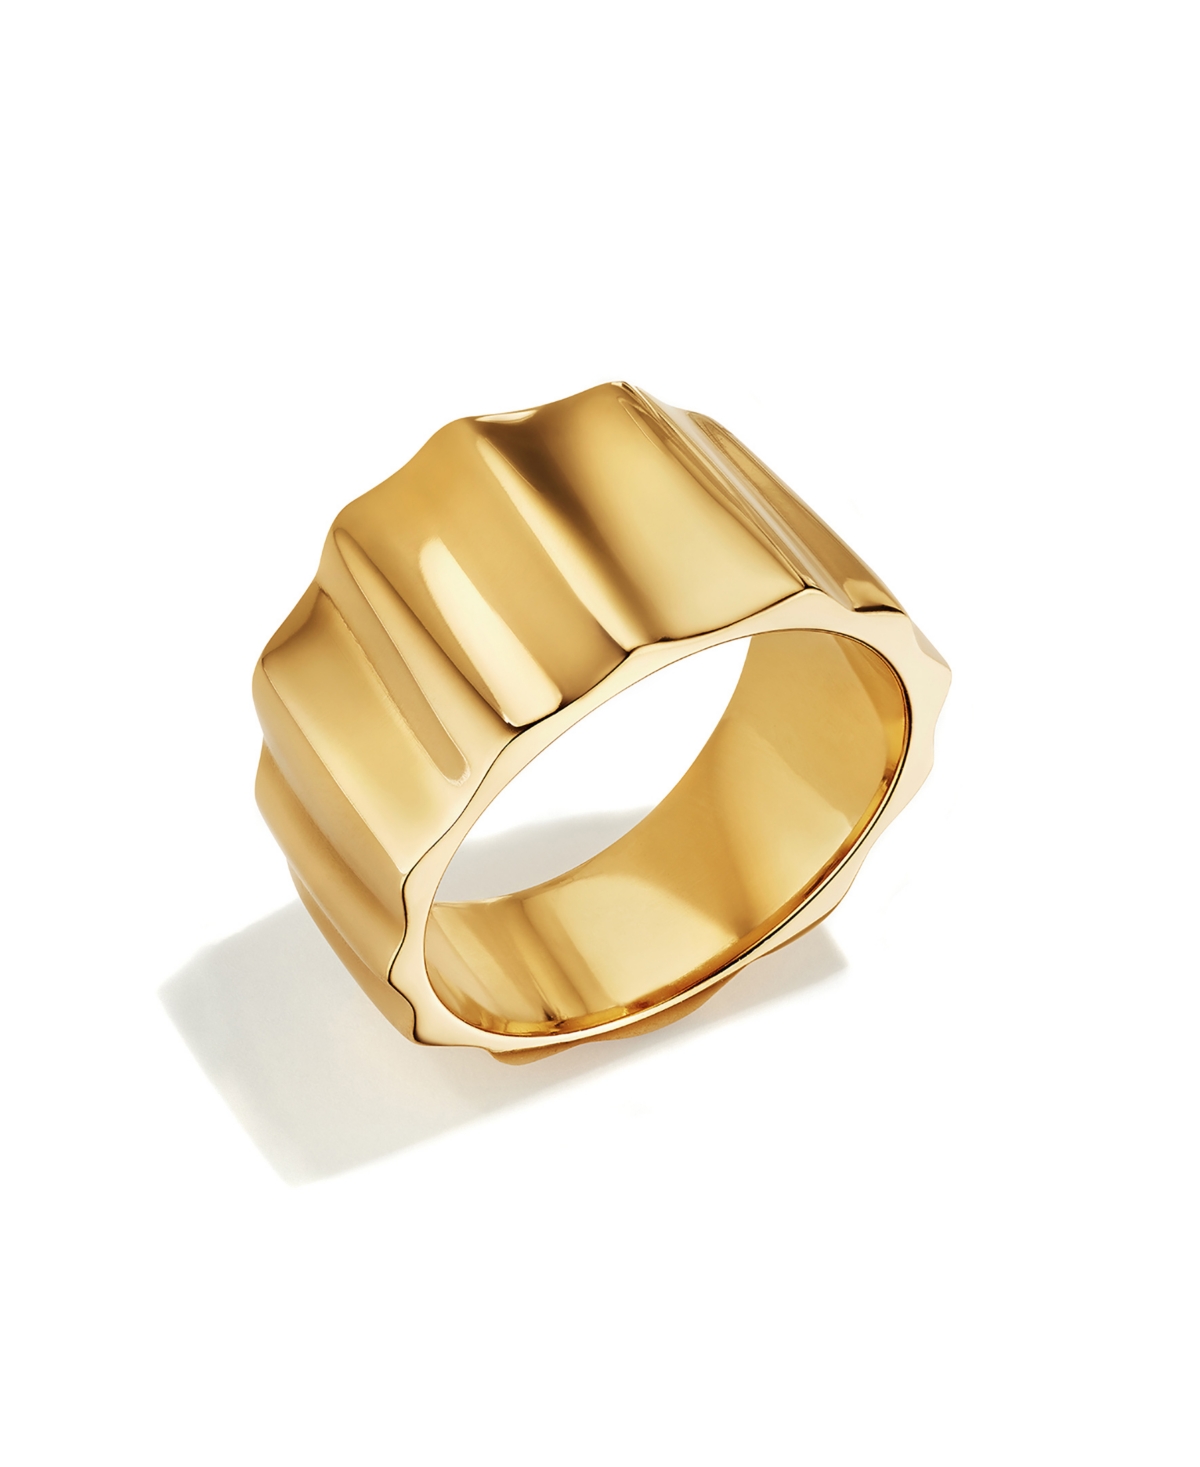 24K Gold-Plated Fuliwa Band Ring - Gold